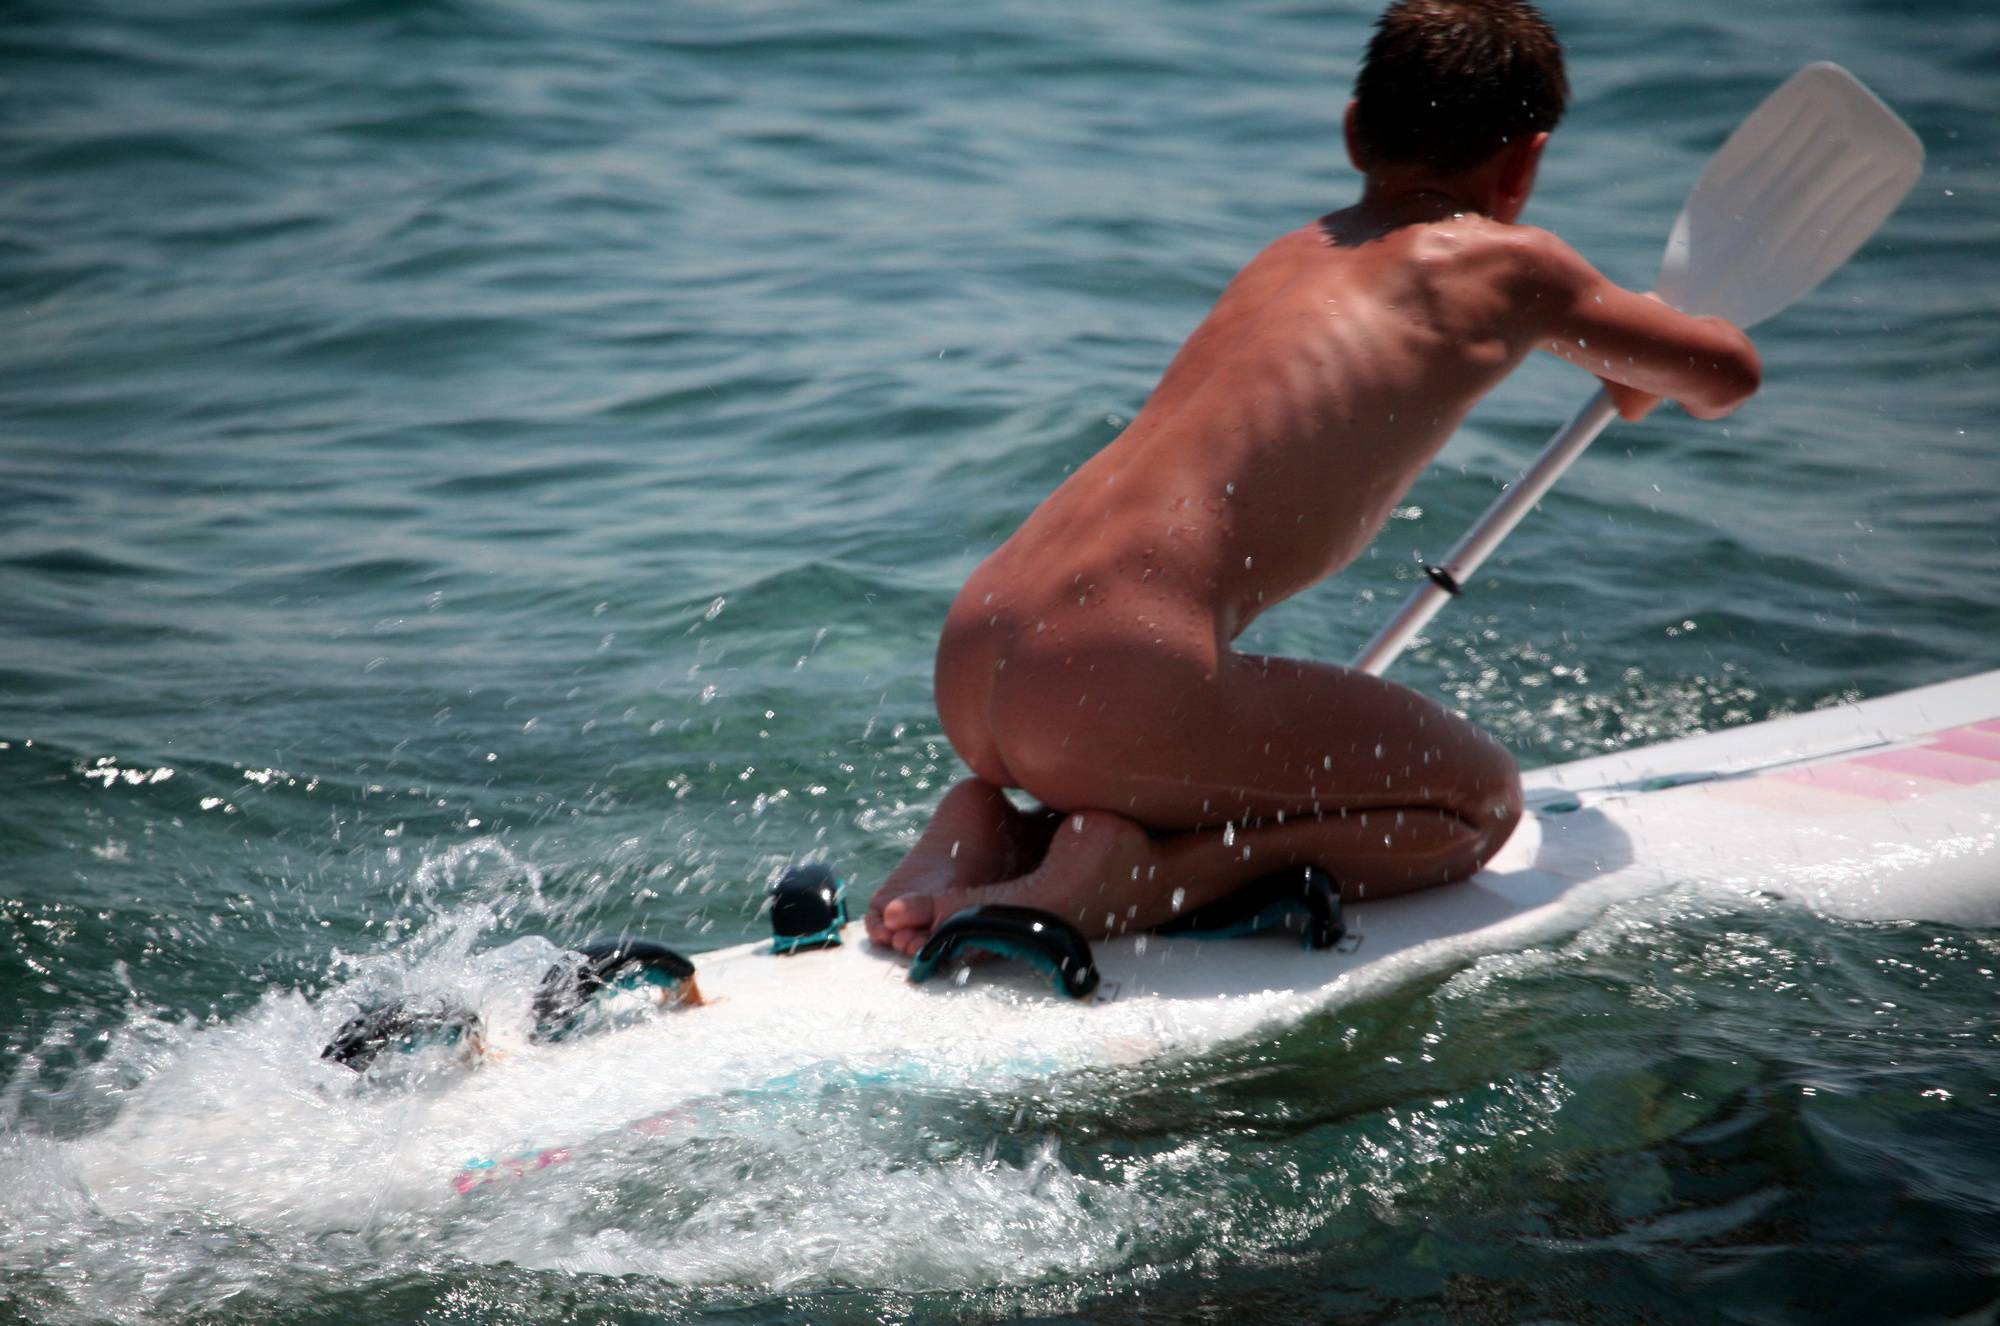 Nudist Pics Boys Nudist Water Surfing - 2